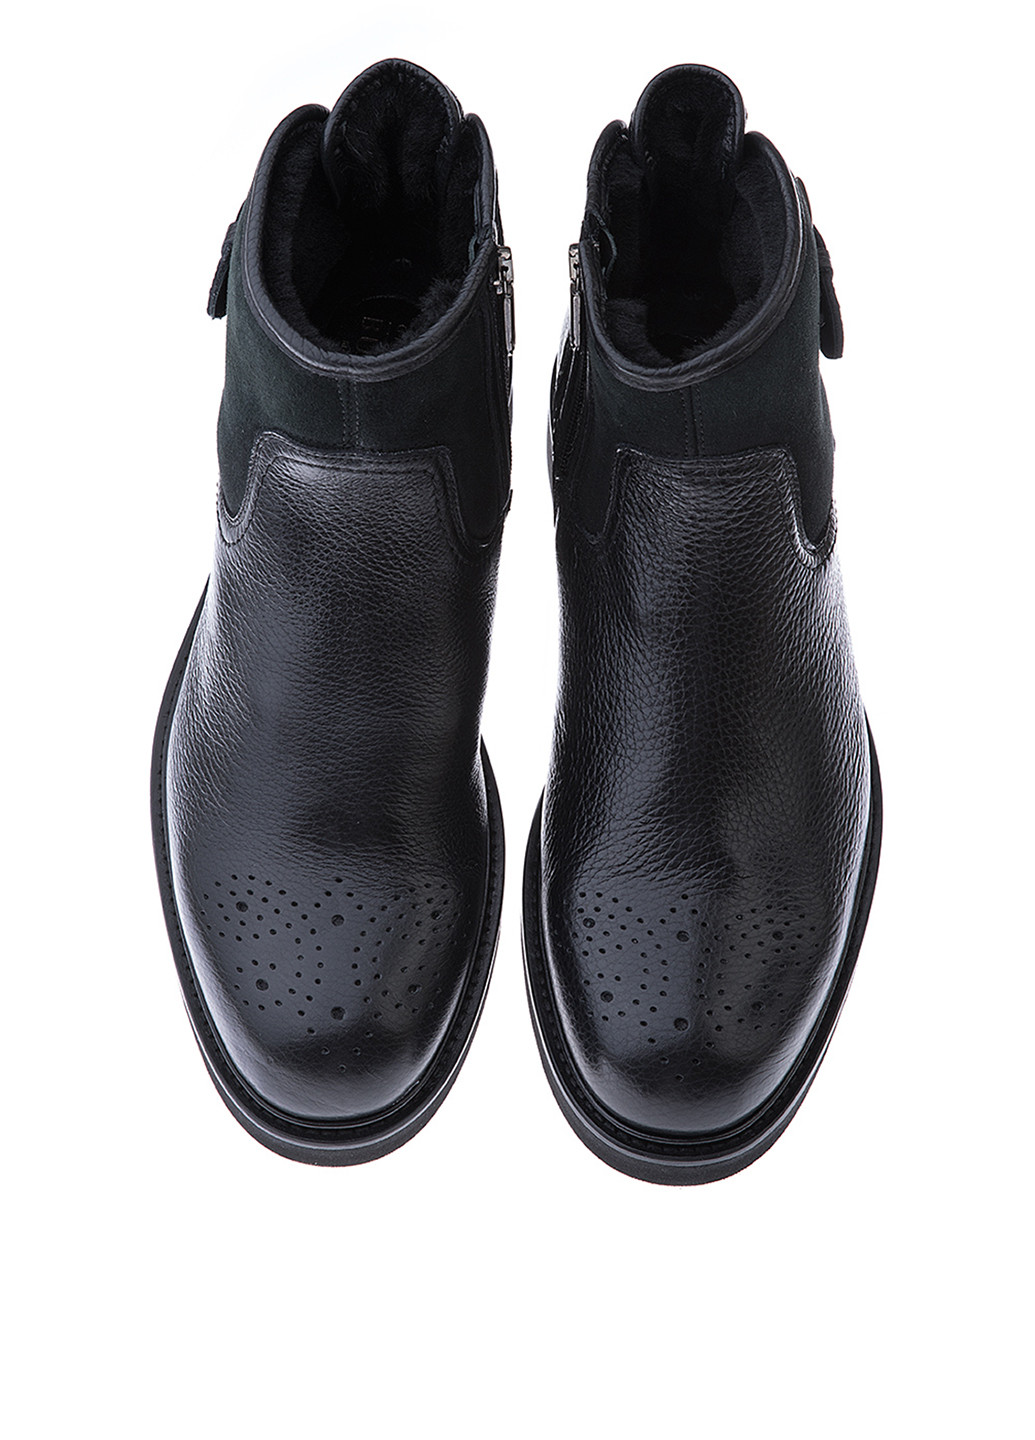 Черные осенние ботинки броги GF.BUTERI